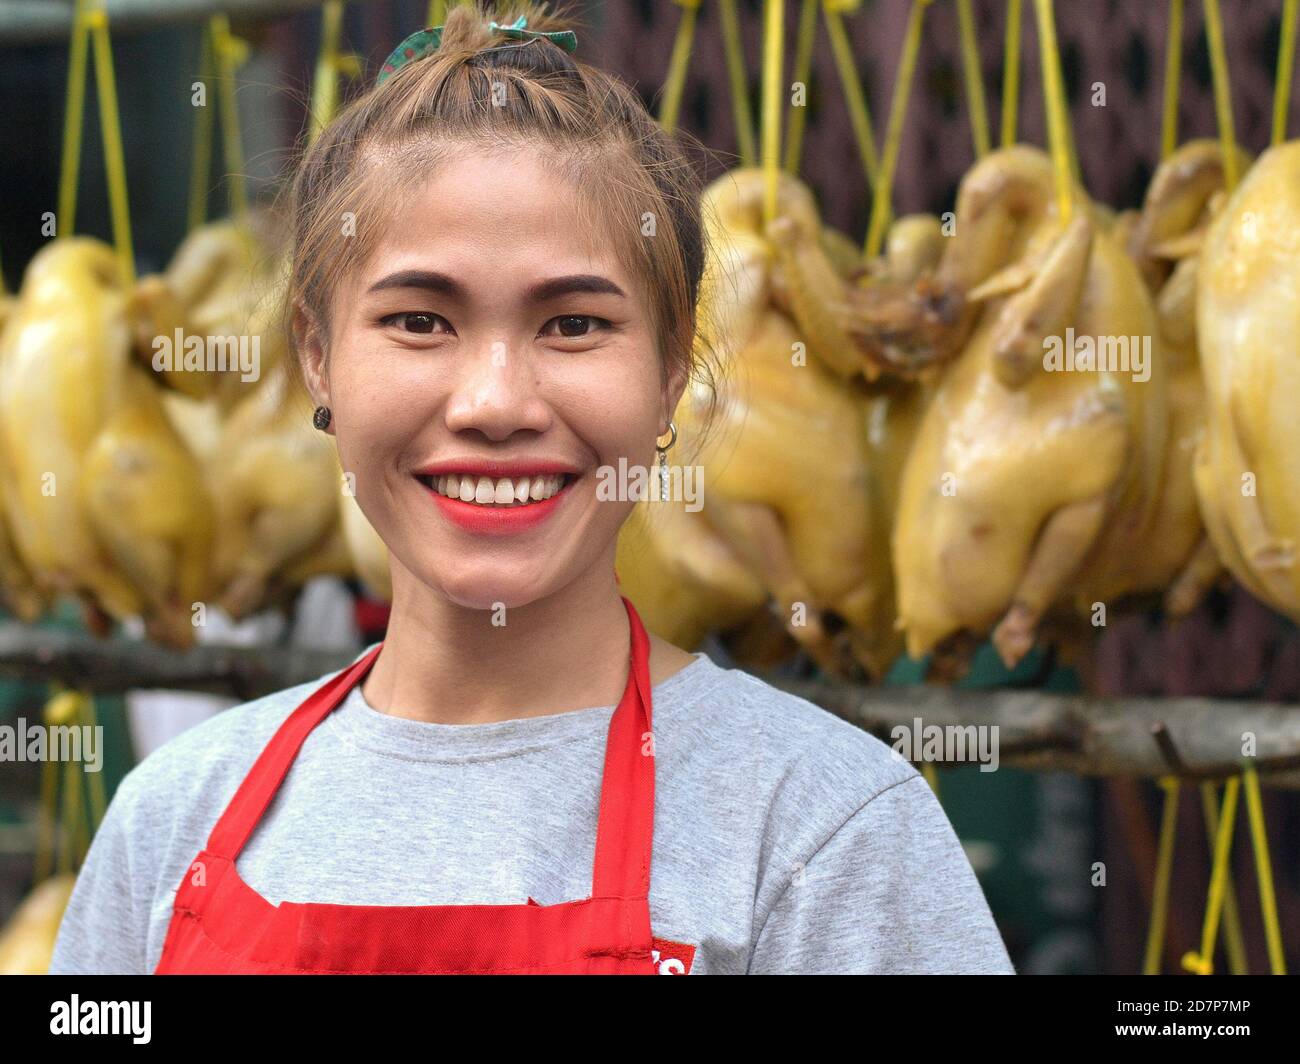 Un jeune chef thaïlandais/cuisinier sourit devant une rangée de canards de Pékin frits suspendus, pendant le nouvel an chinois dans le quartier chinois de Bangkok. Banque D'Images